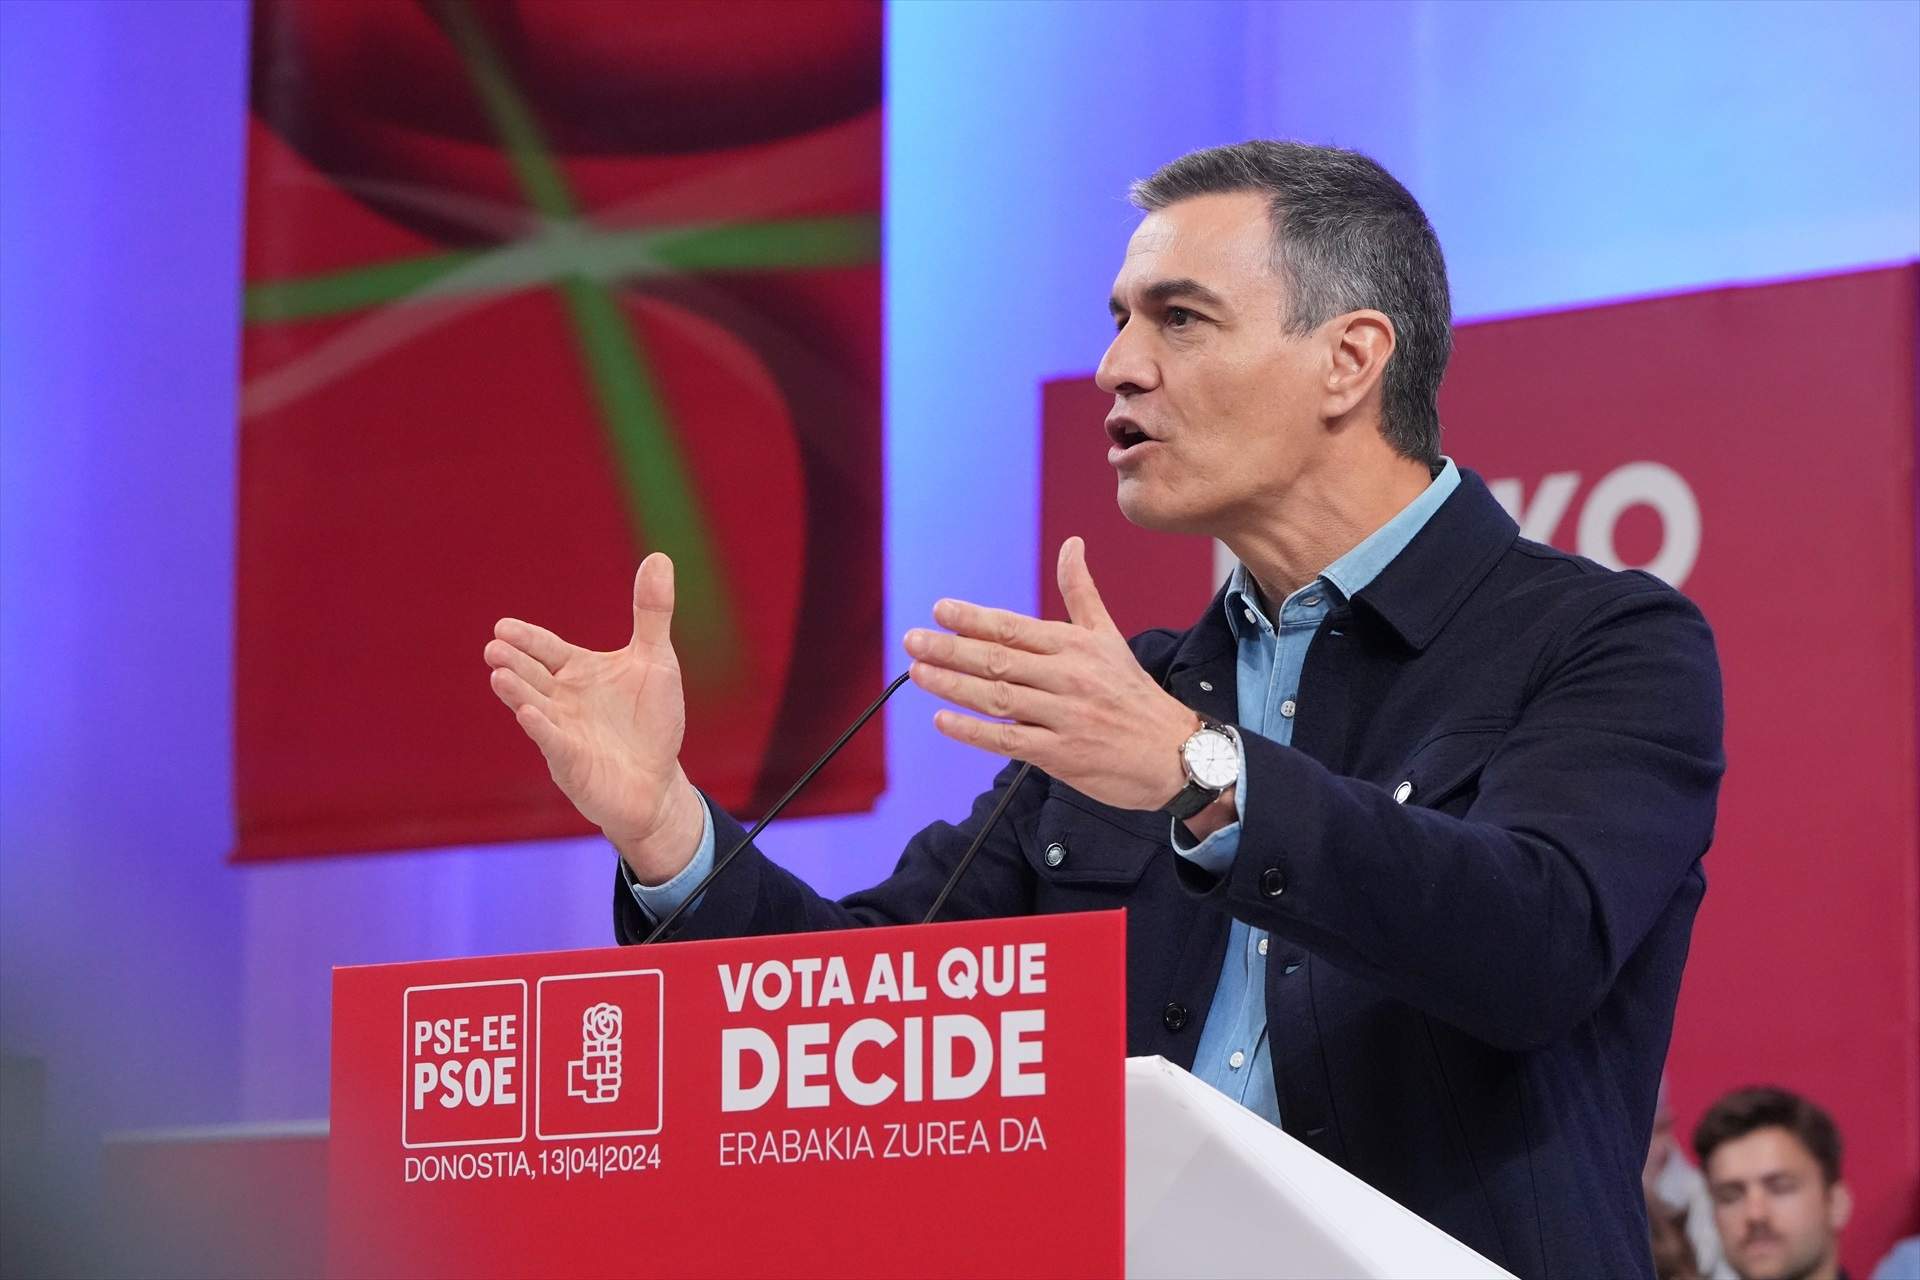 Pedro Sánchez saca pecho del crecimiento económico: "Ni mil paladas de lodo del PP y Vox taparán los éxitos"